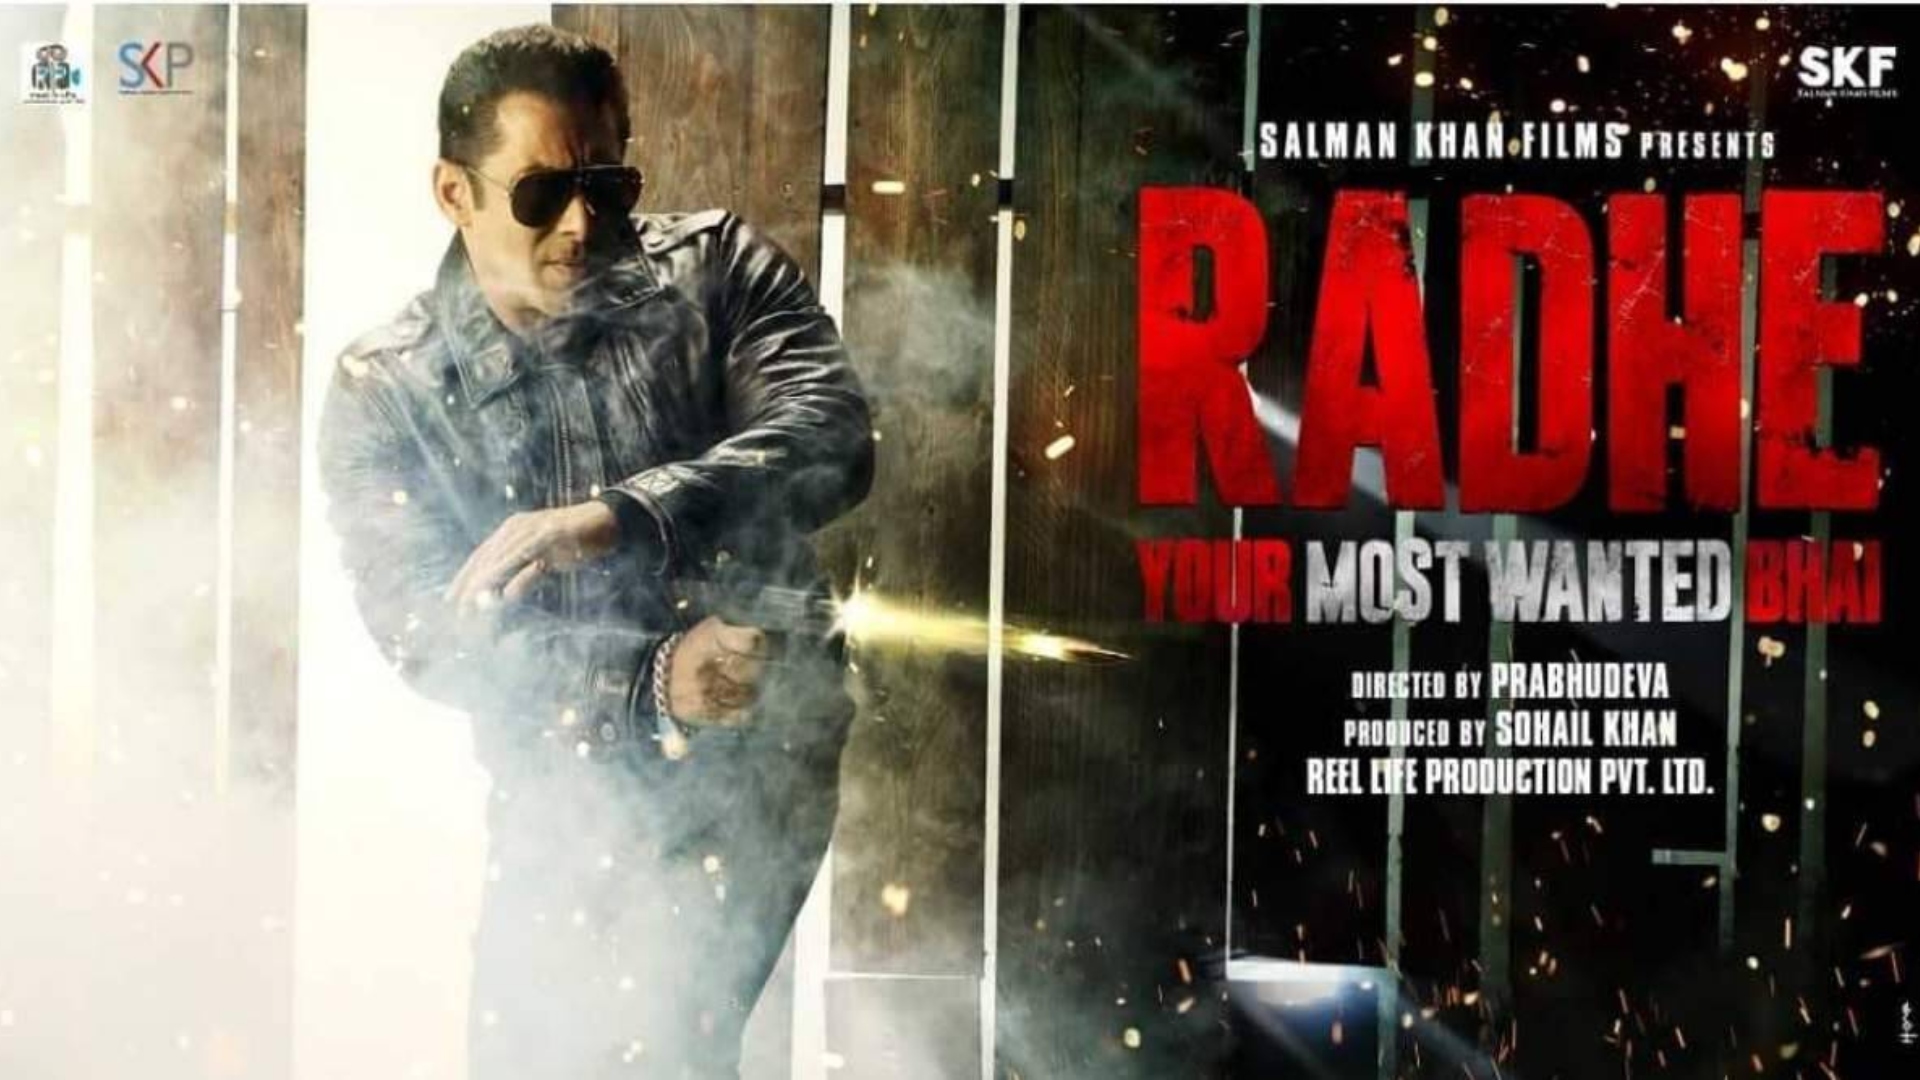 “Radhe”, cine de acción indio en estreno